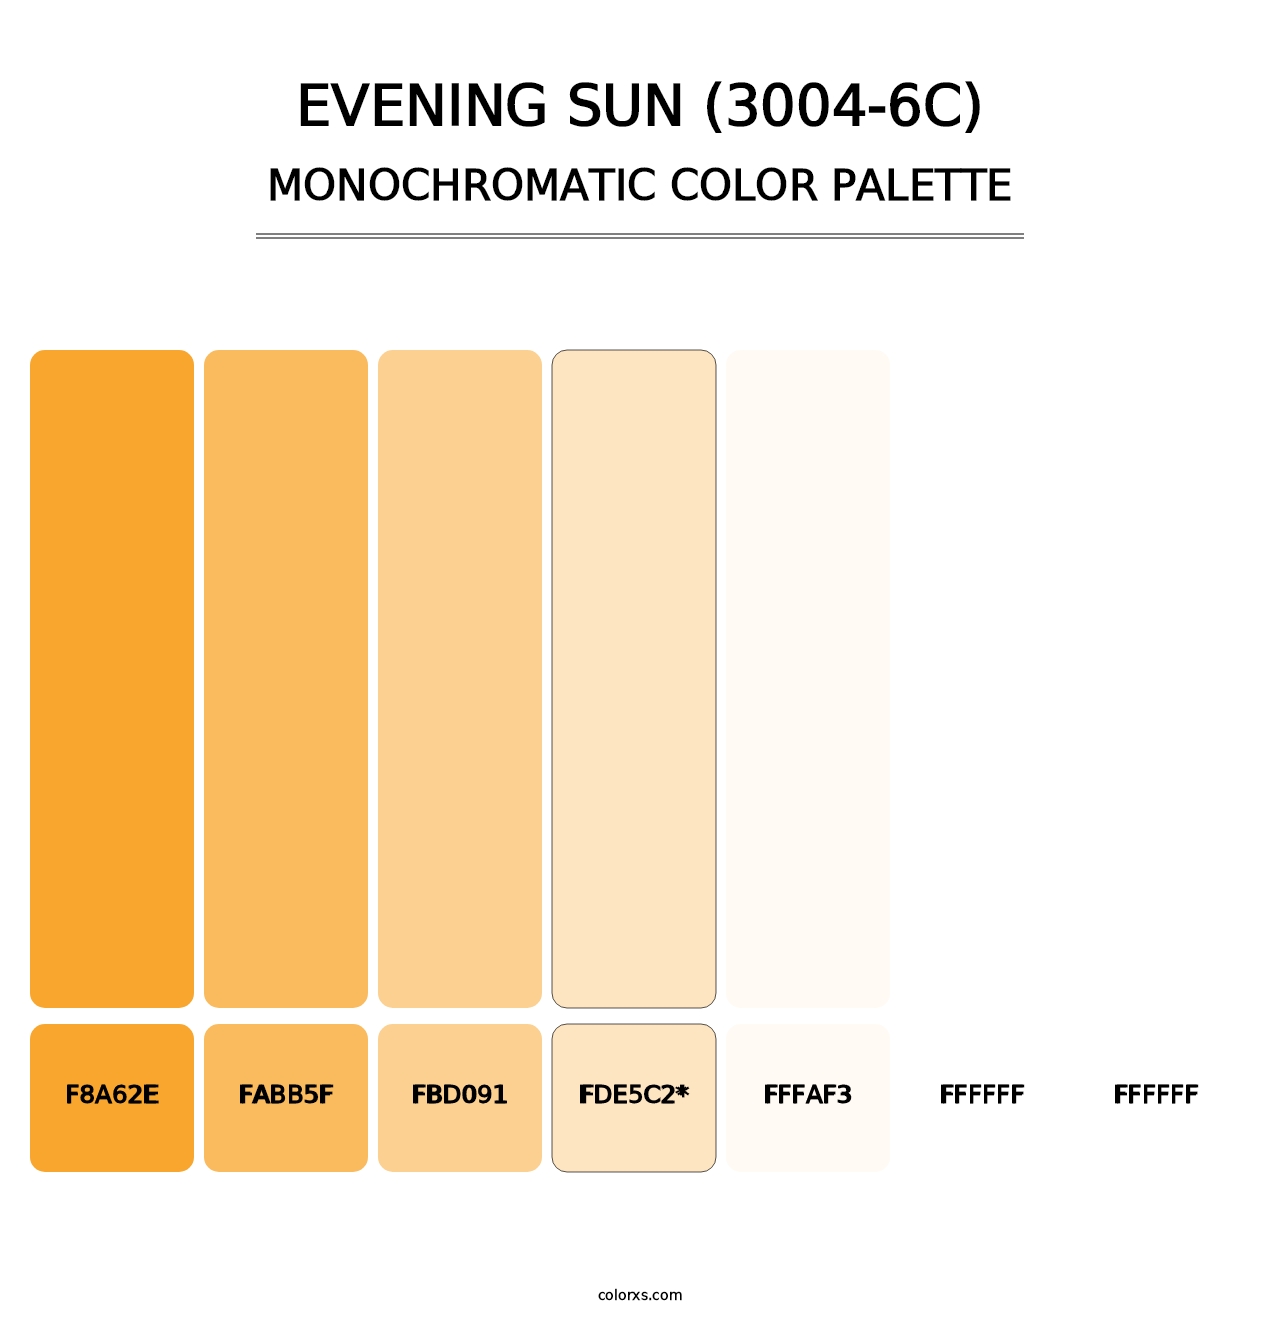 Evening Sun (3004-6C) - Monochromatic Color Palette